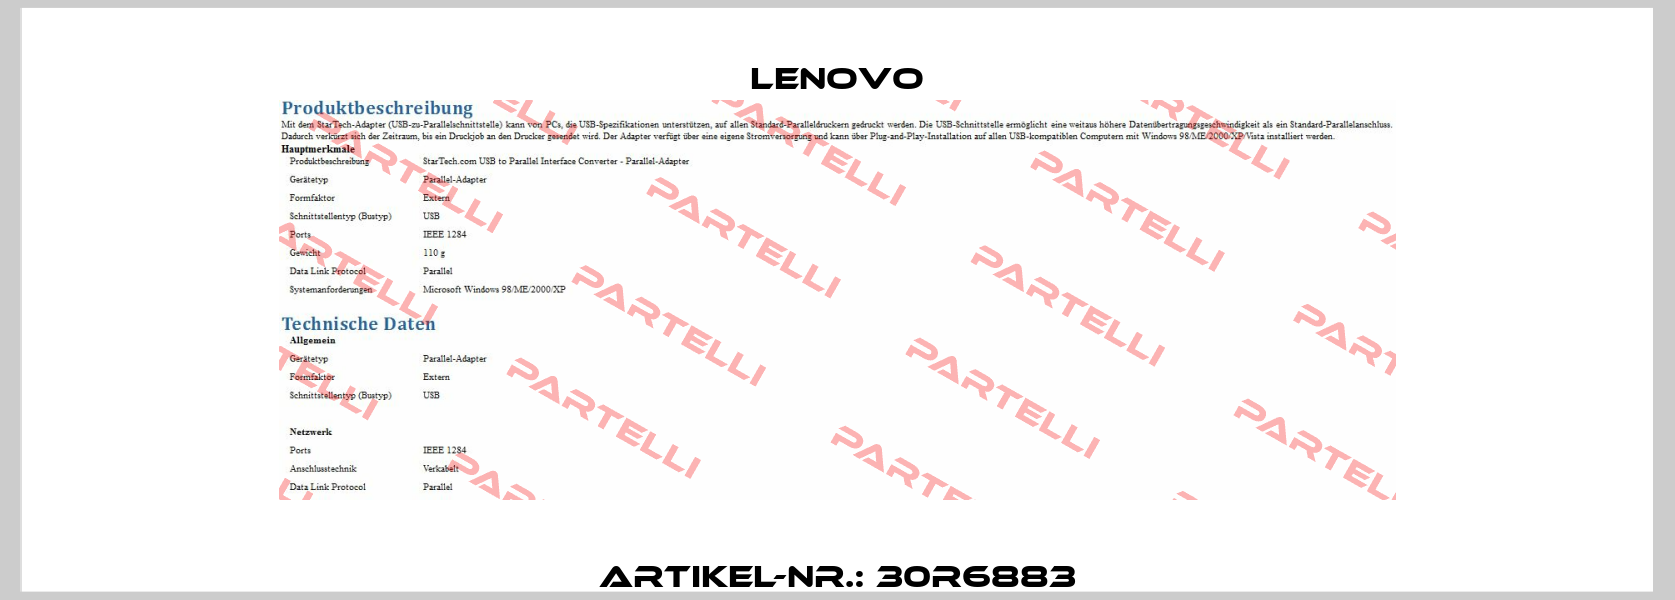 Artikel-Nr.: 30R6883 Lenovo